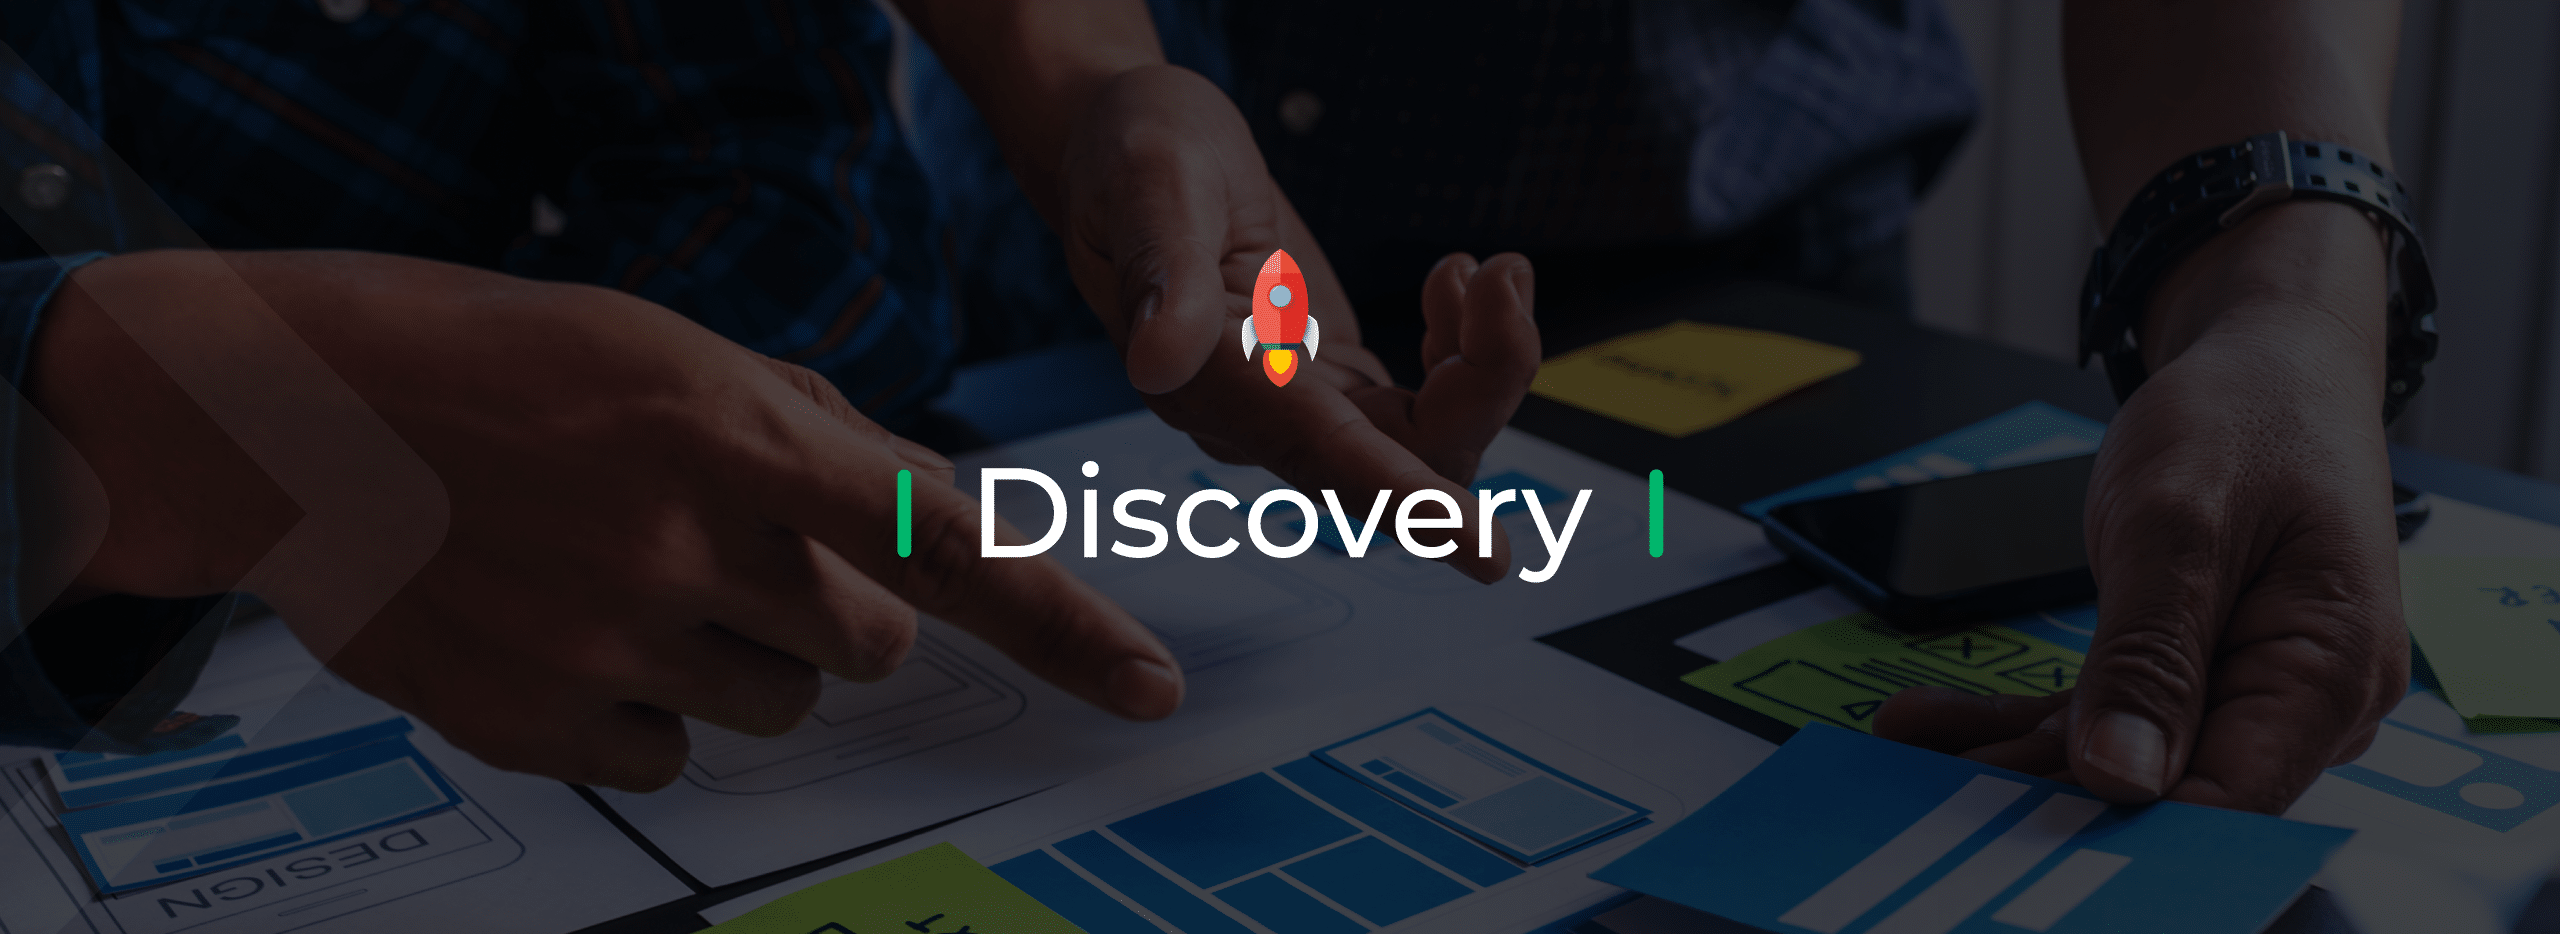 Discovery: el comienzo ideal para tu proyecto